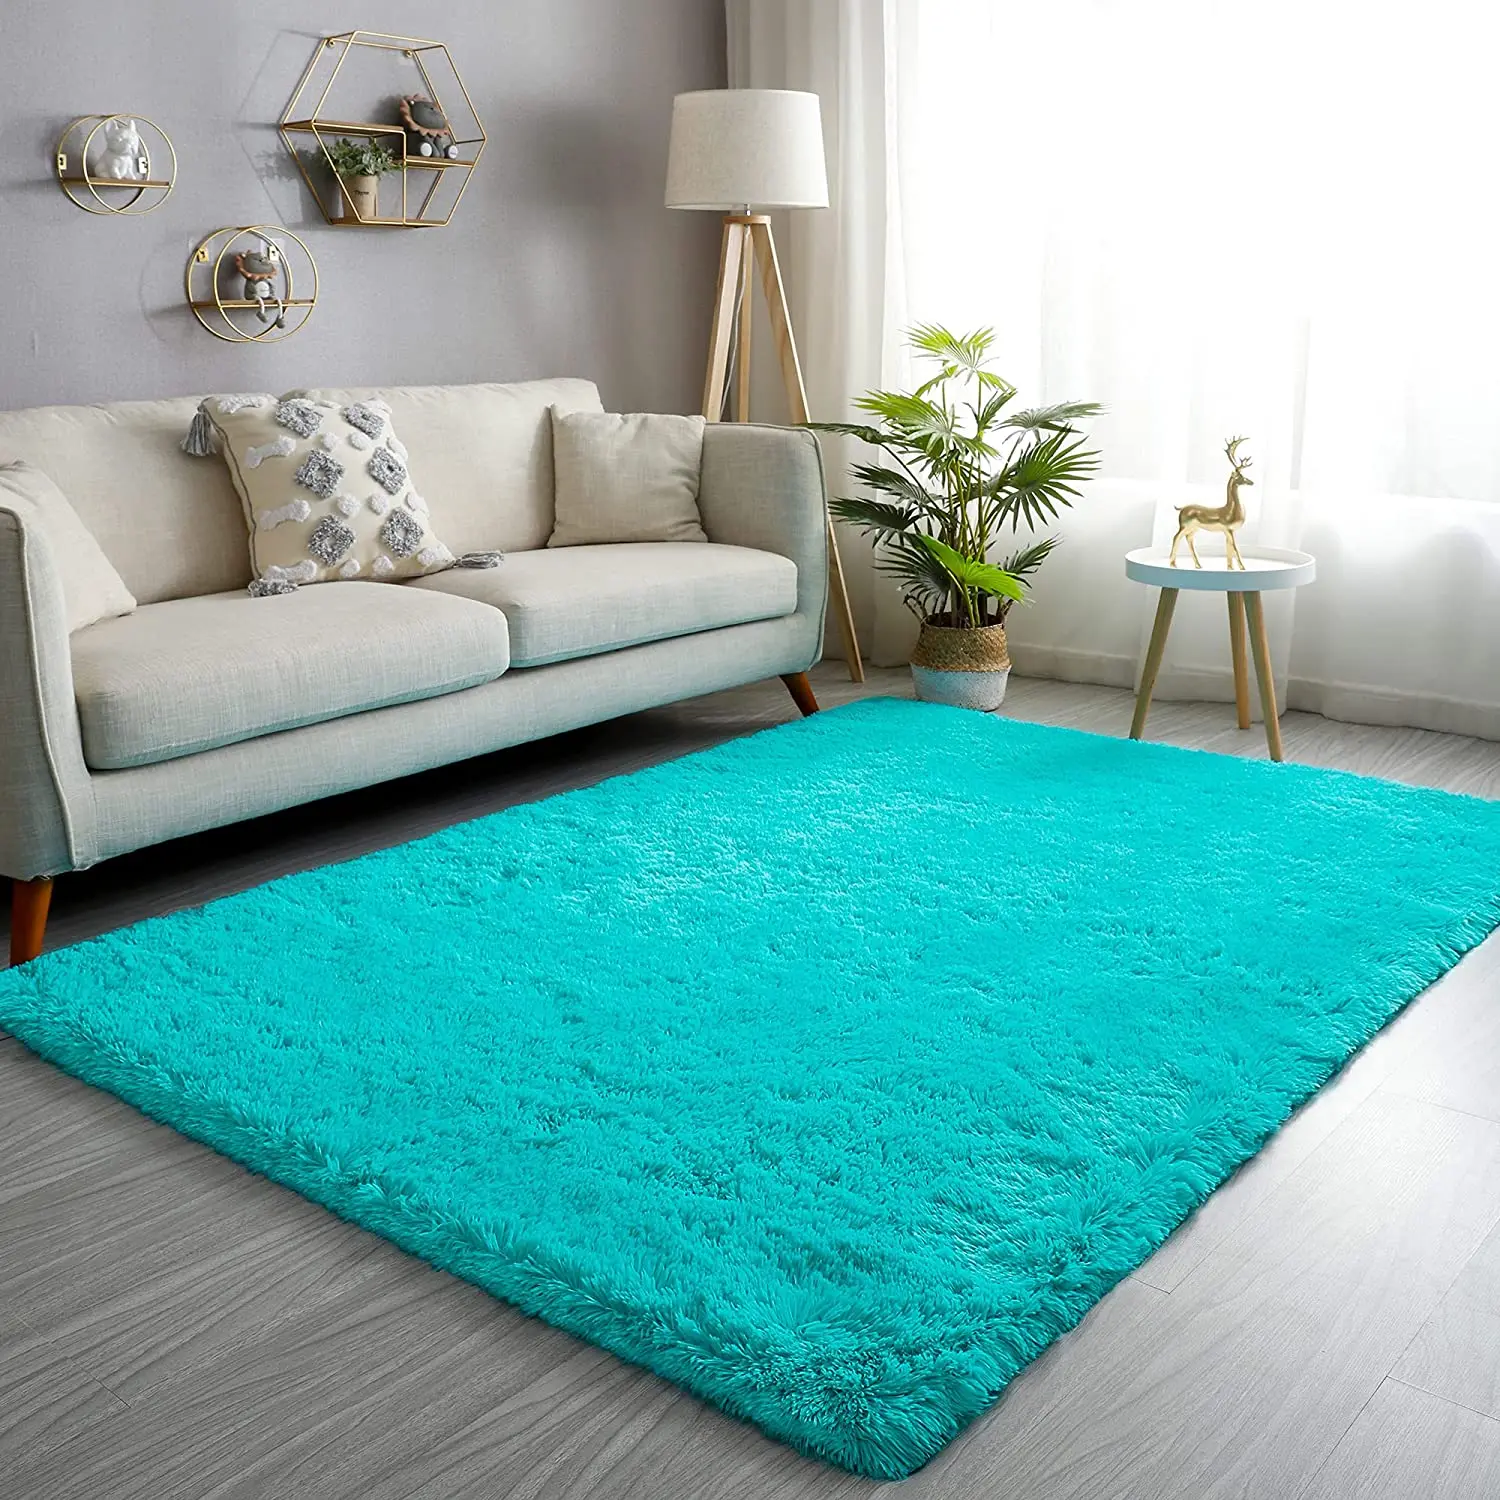 

Ultra Soft Shaggy Rugs Fluffy Carpet for Room Non-Slip Modern Plush Area Rugs Rectangular Home Decor Shag Rug Living Room Carpet